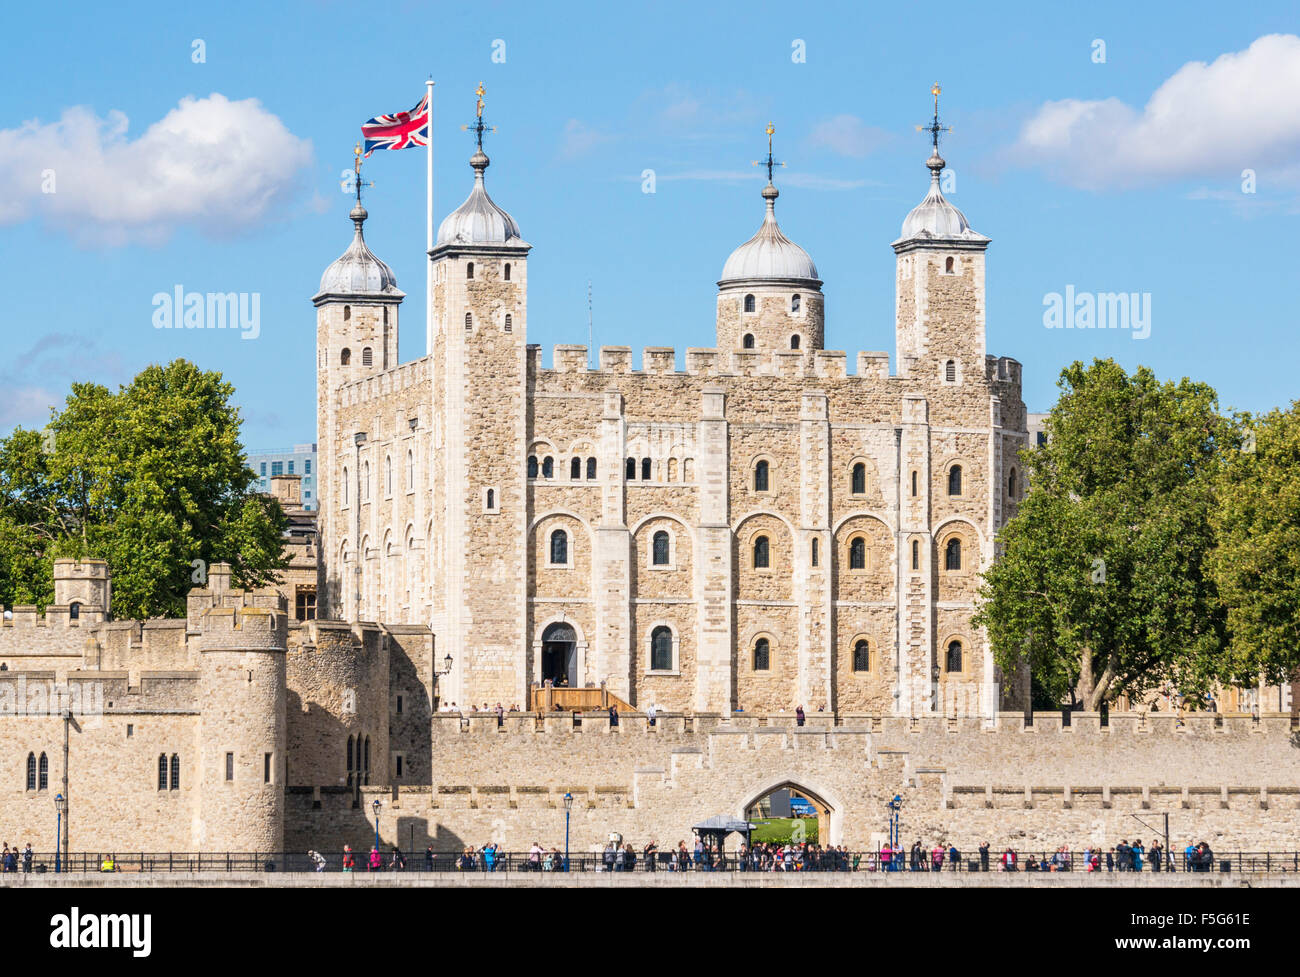 La torre bianca e delle mura del castello Torre di Londra visualizza i dettagli di City di Londra Inghilterra GB UK EU Europe Foto Stock